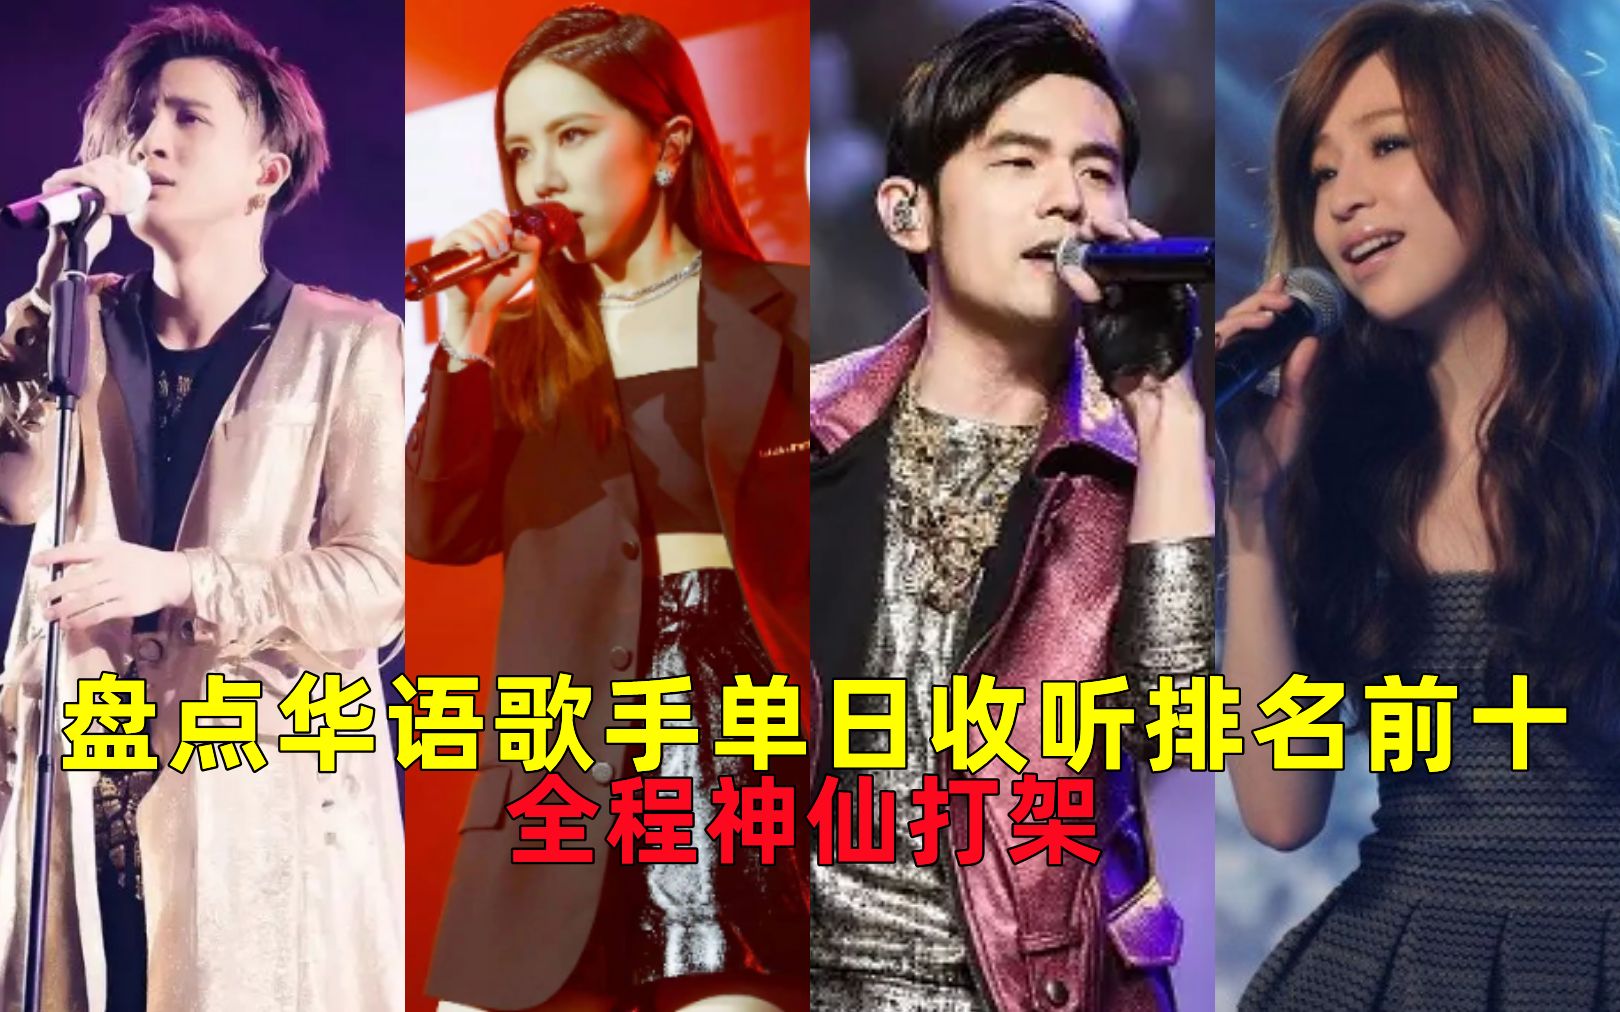 《华语音乐排行榜》2022年第三十期【榜样音乐】揭晓 - 哔哩哔哩